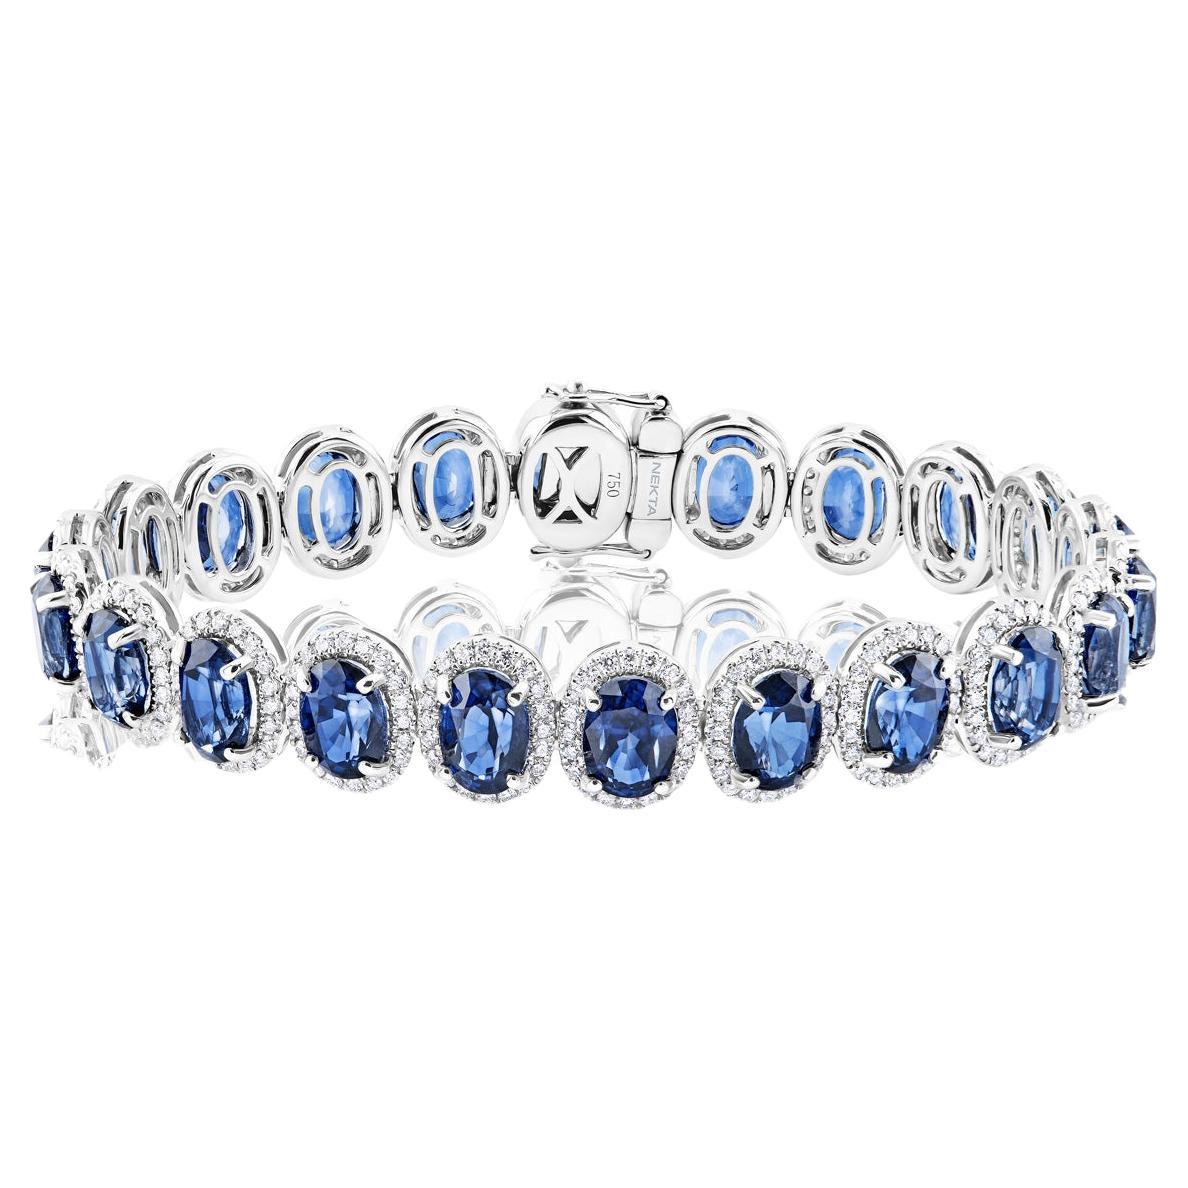 26 Karat Ovalschliff J'adore Blaues Saphir-Armband zertifiziert